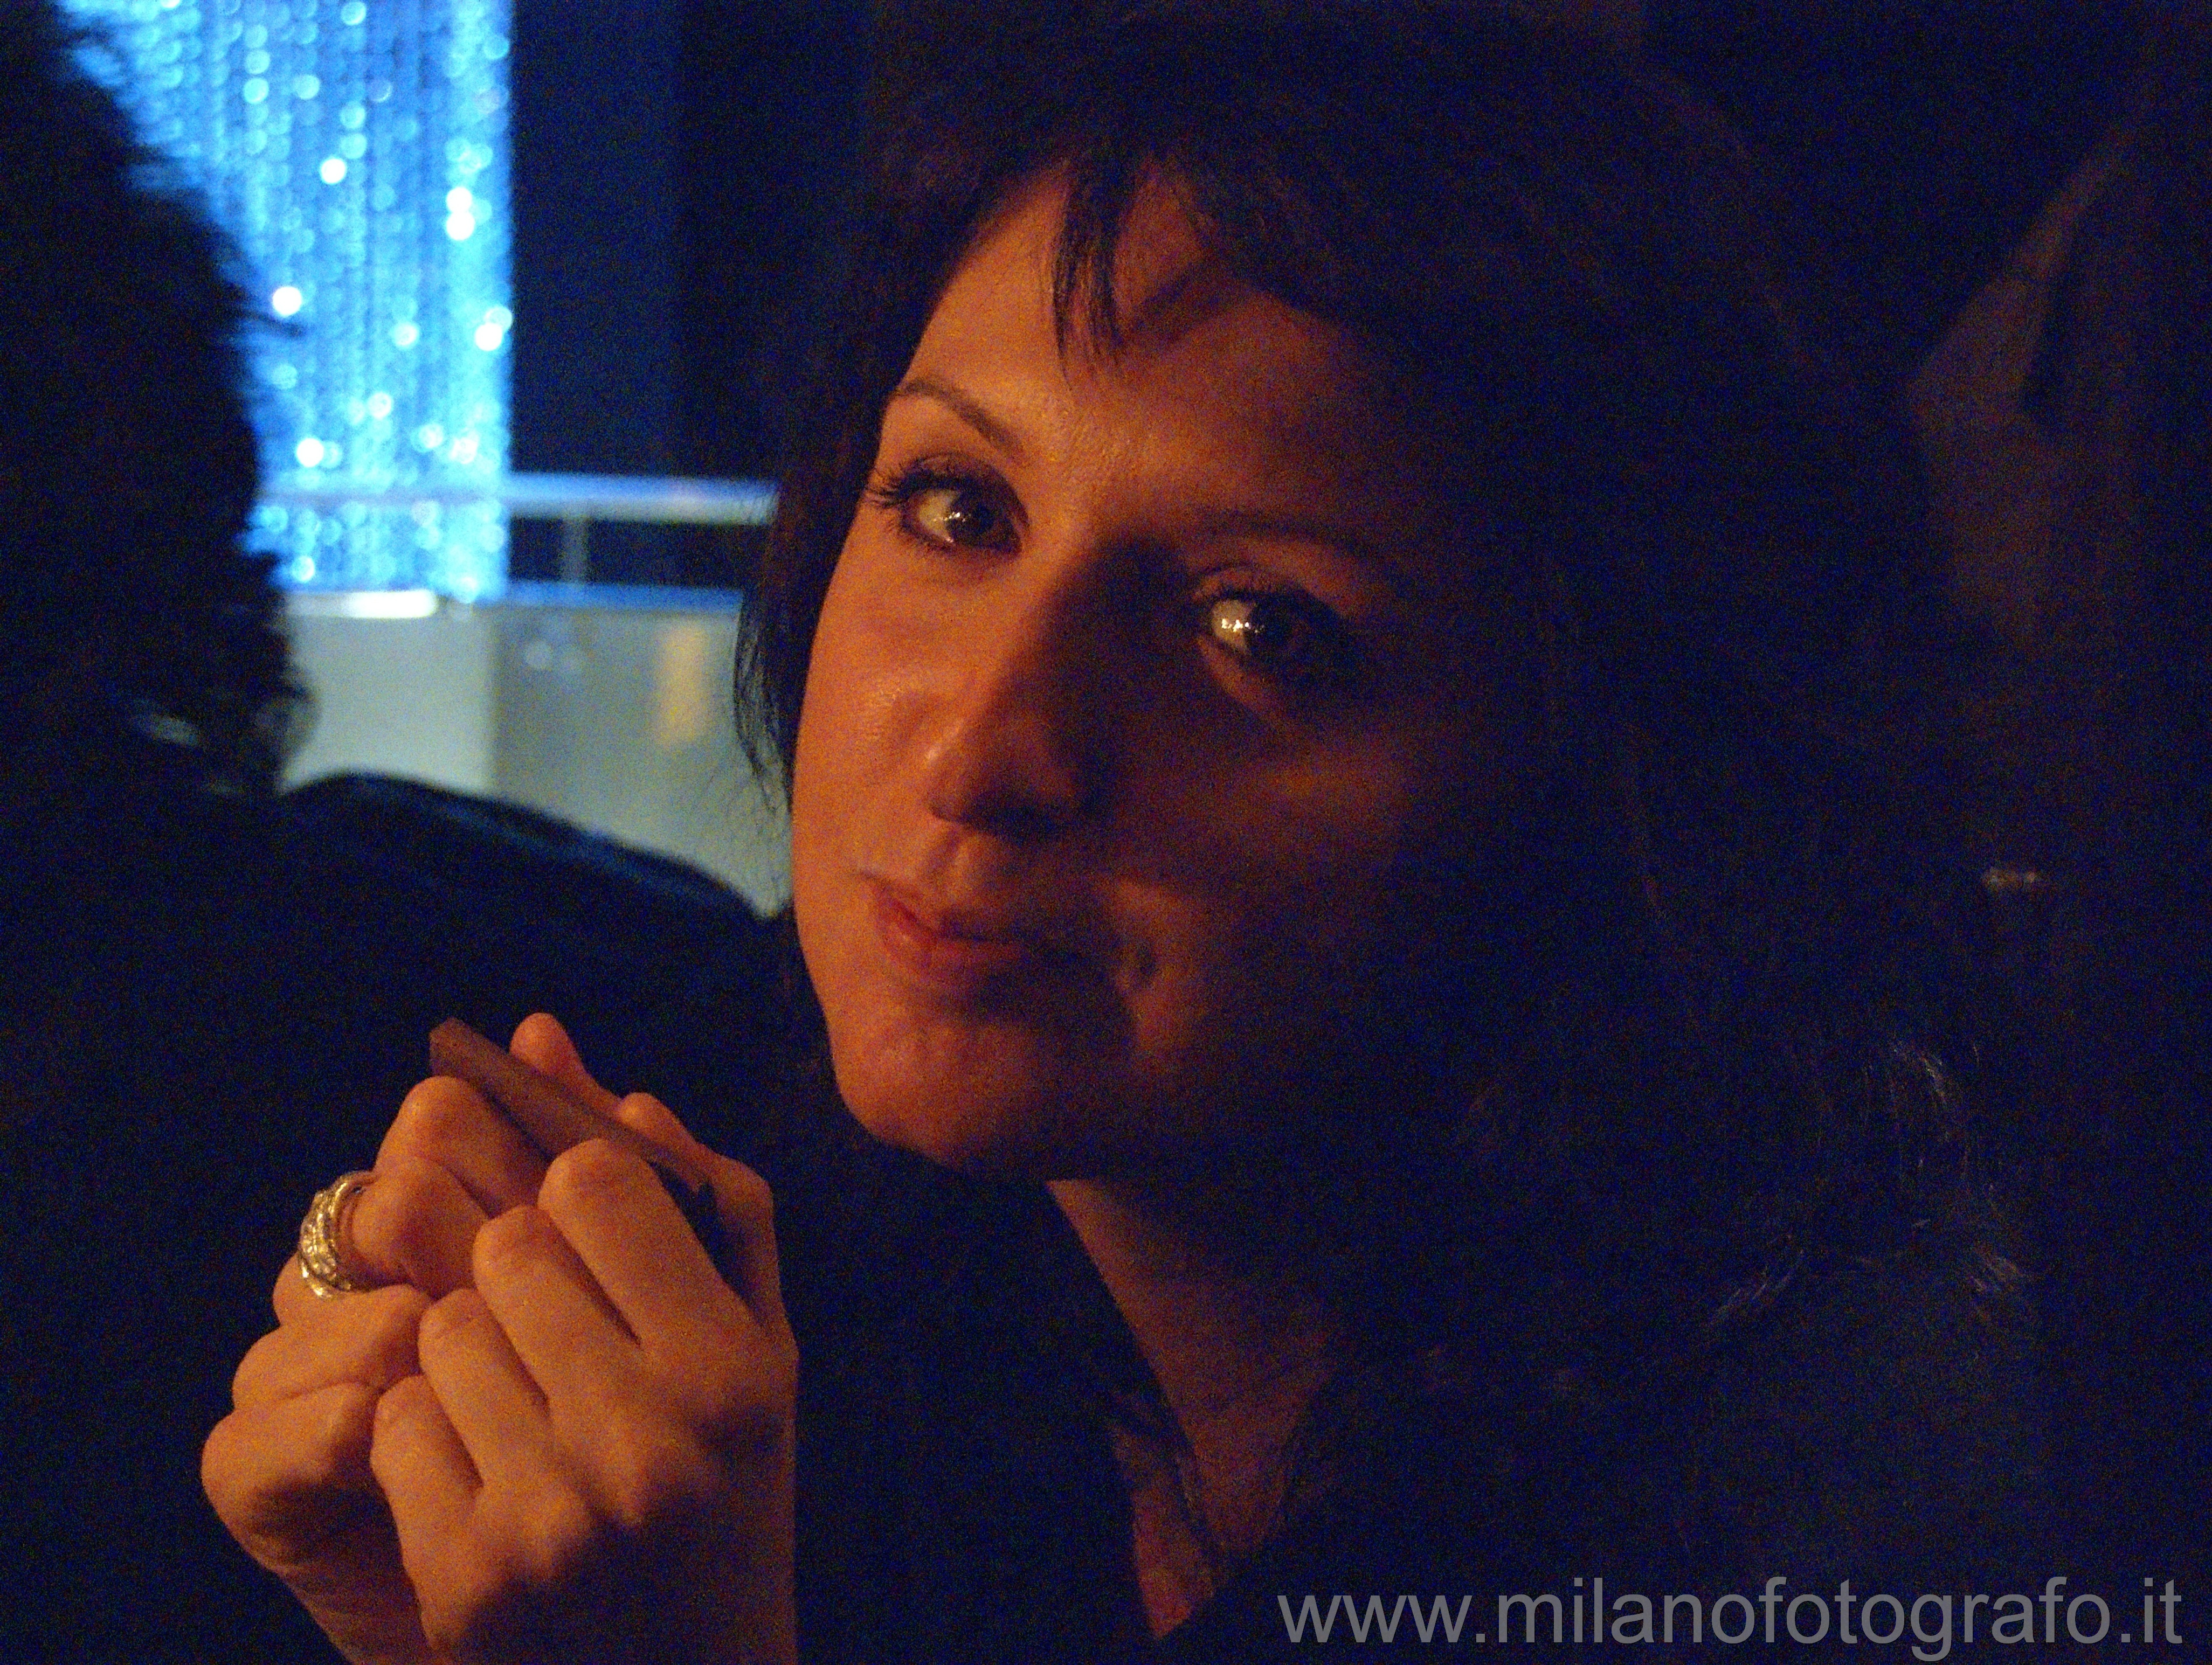 Milano: Ritratto femminile a lume di candela - Milano